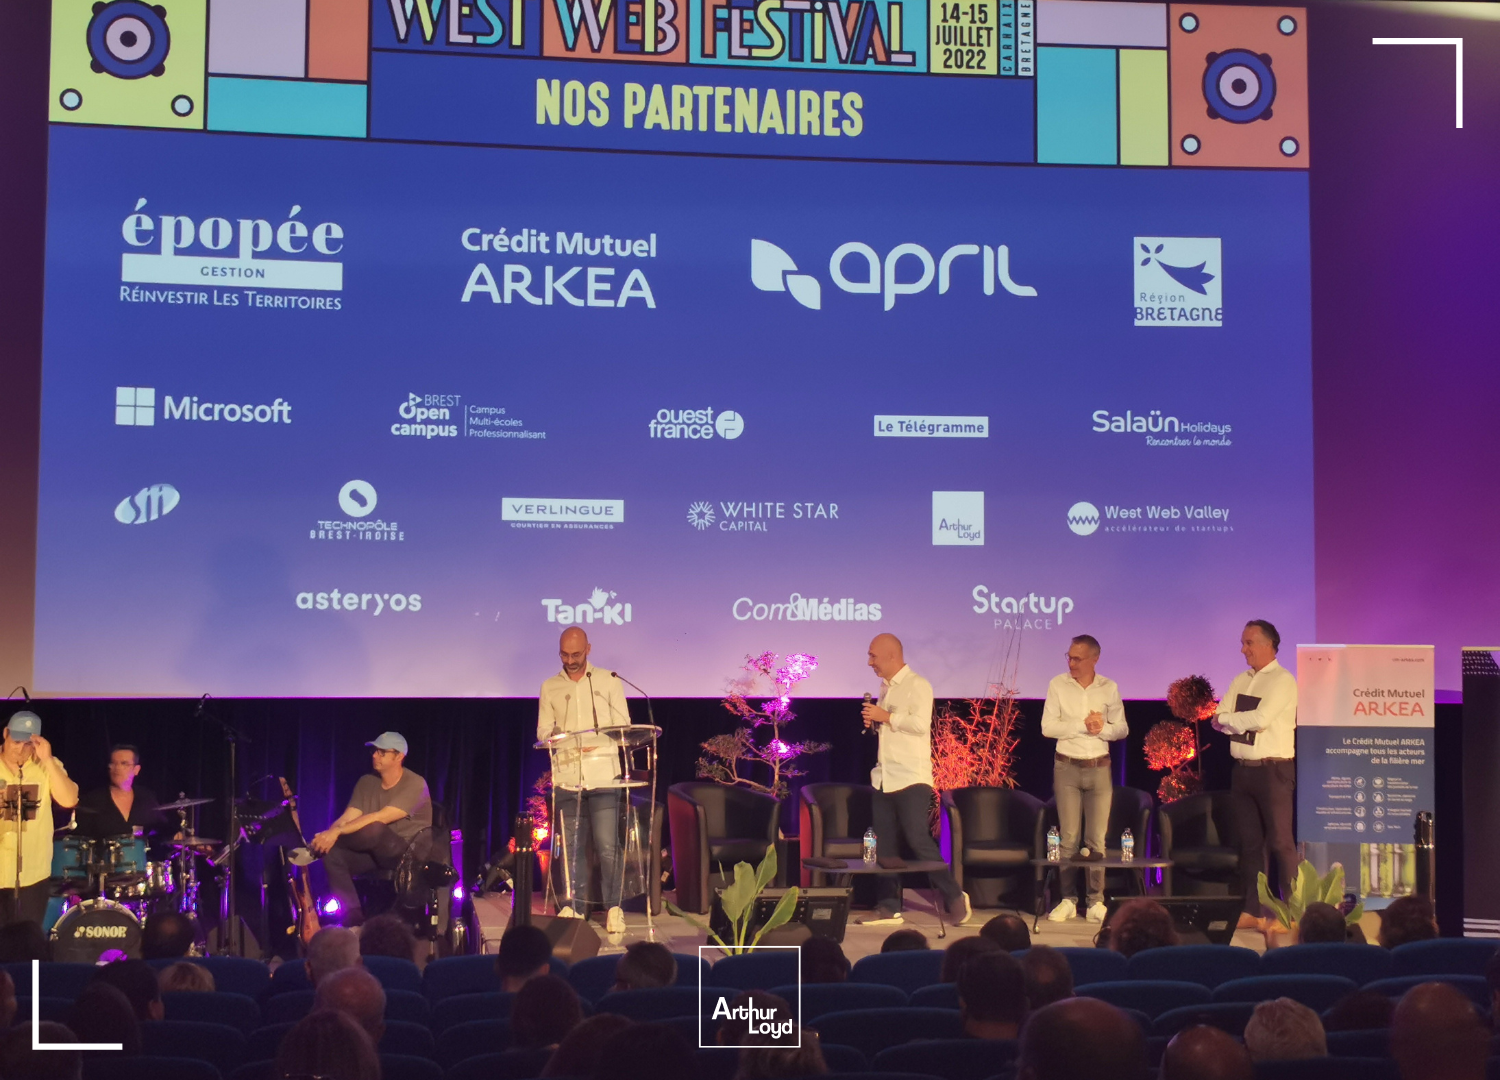 Écran présentant les différents partenaires du West Web Festival 2022